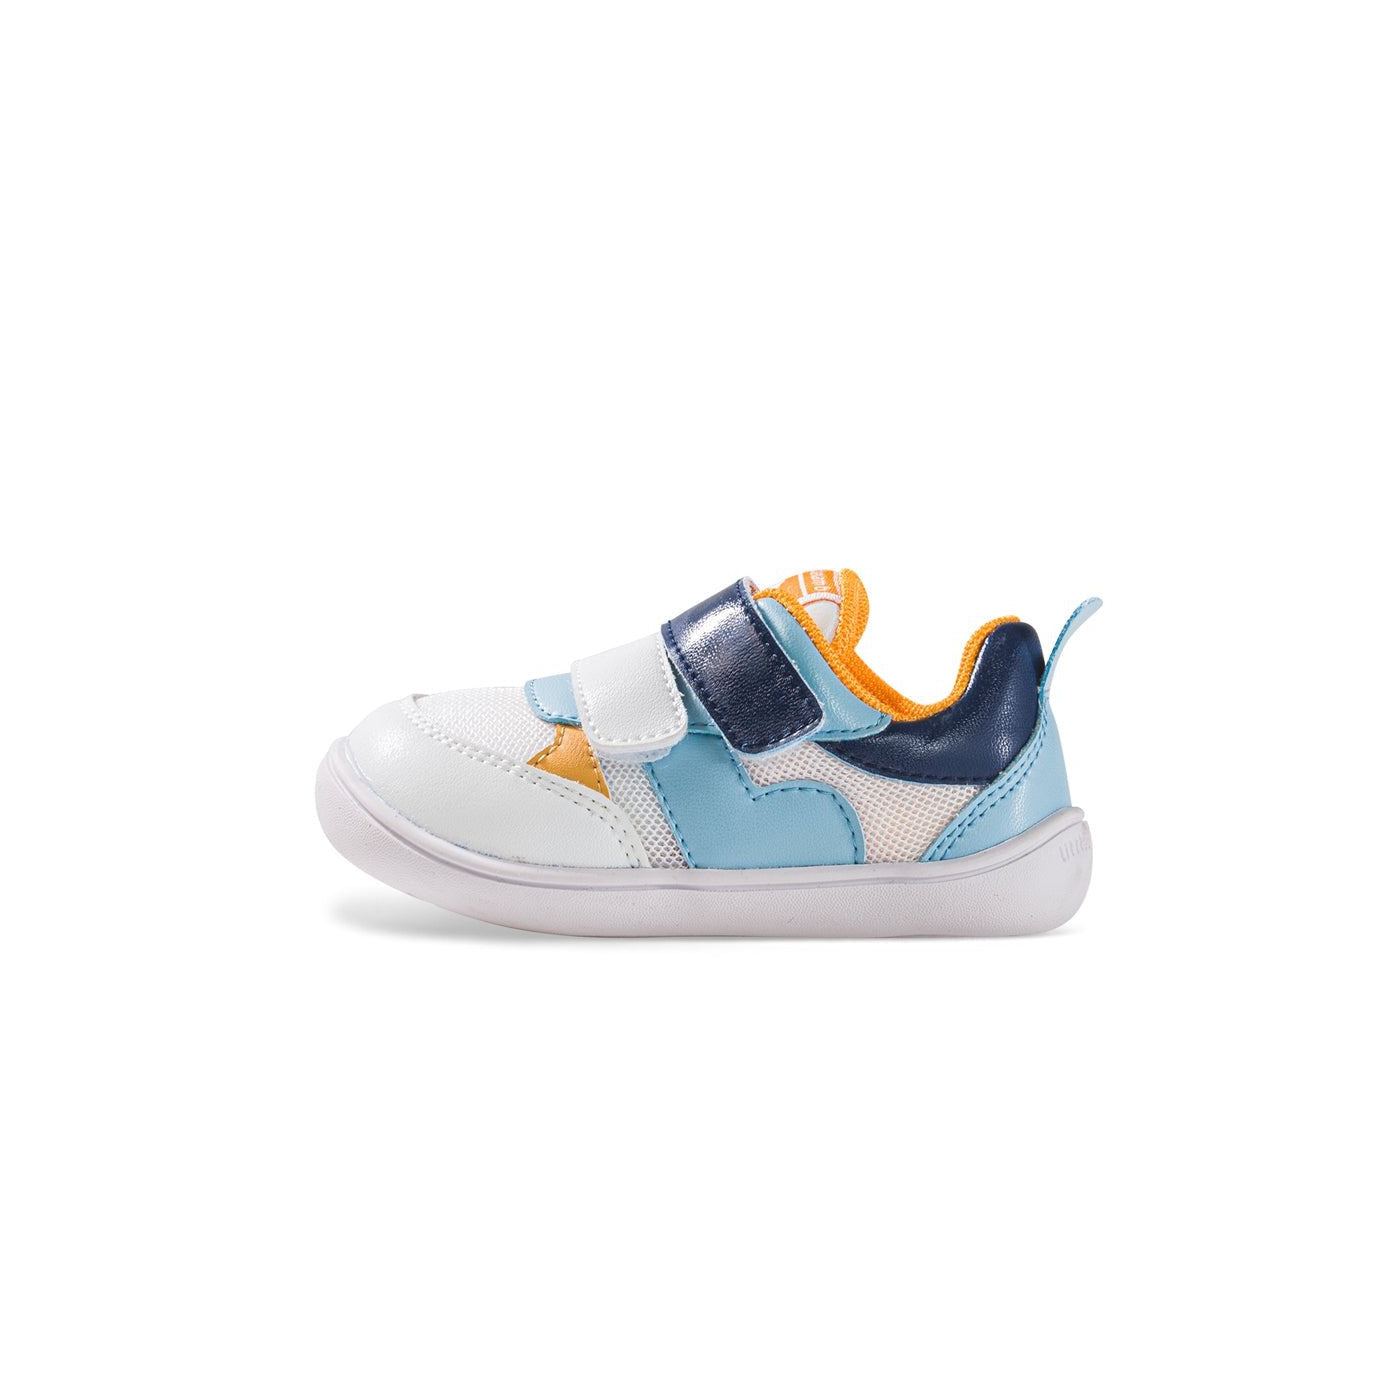 NOVA Soft Sole Anti-slip Pre-walker Blue Baby Boy Sneakers - 0cm